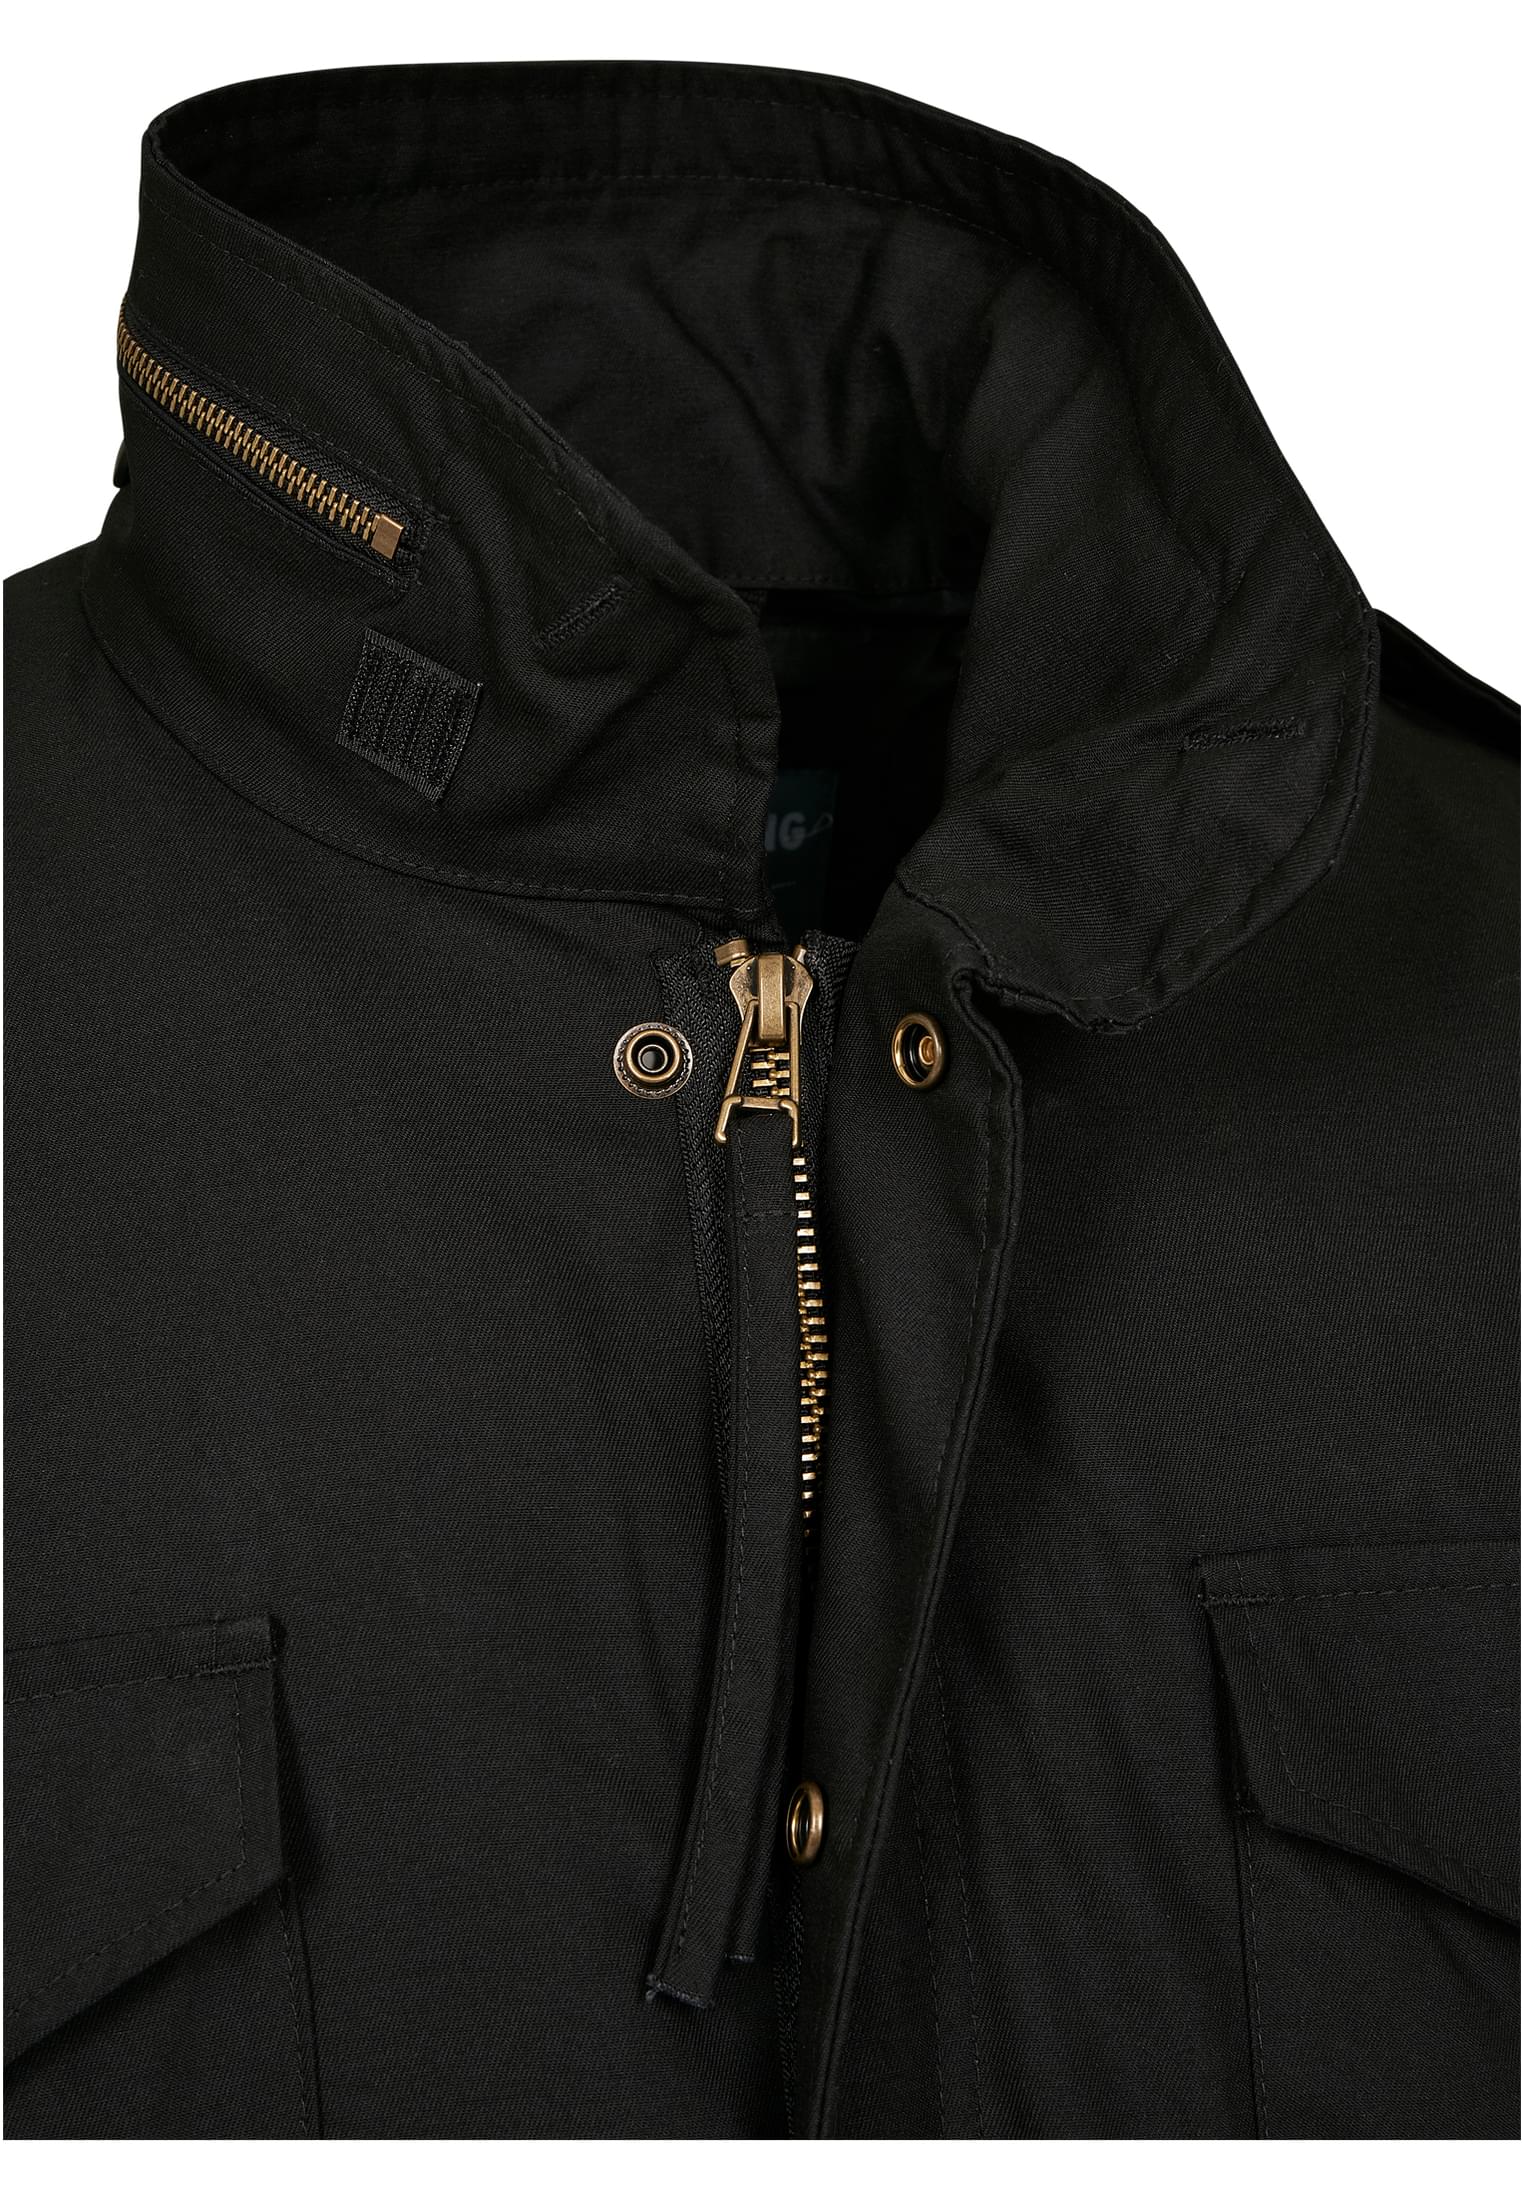 Jacken M-65 Field Jacket in Farbe black